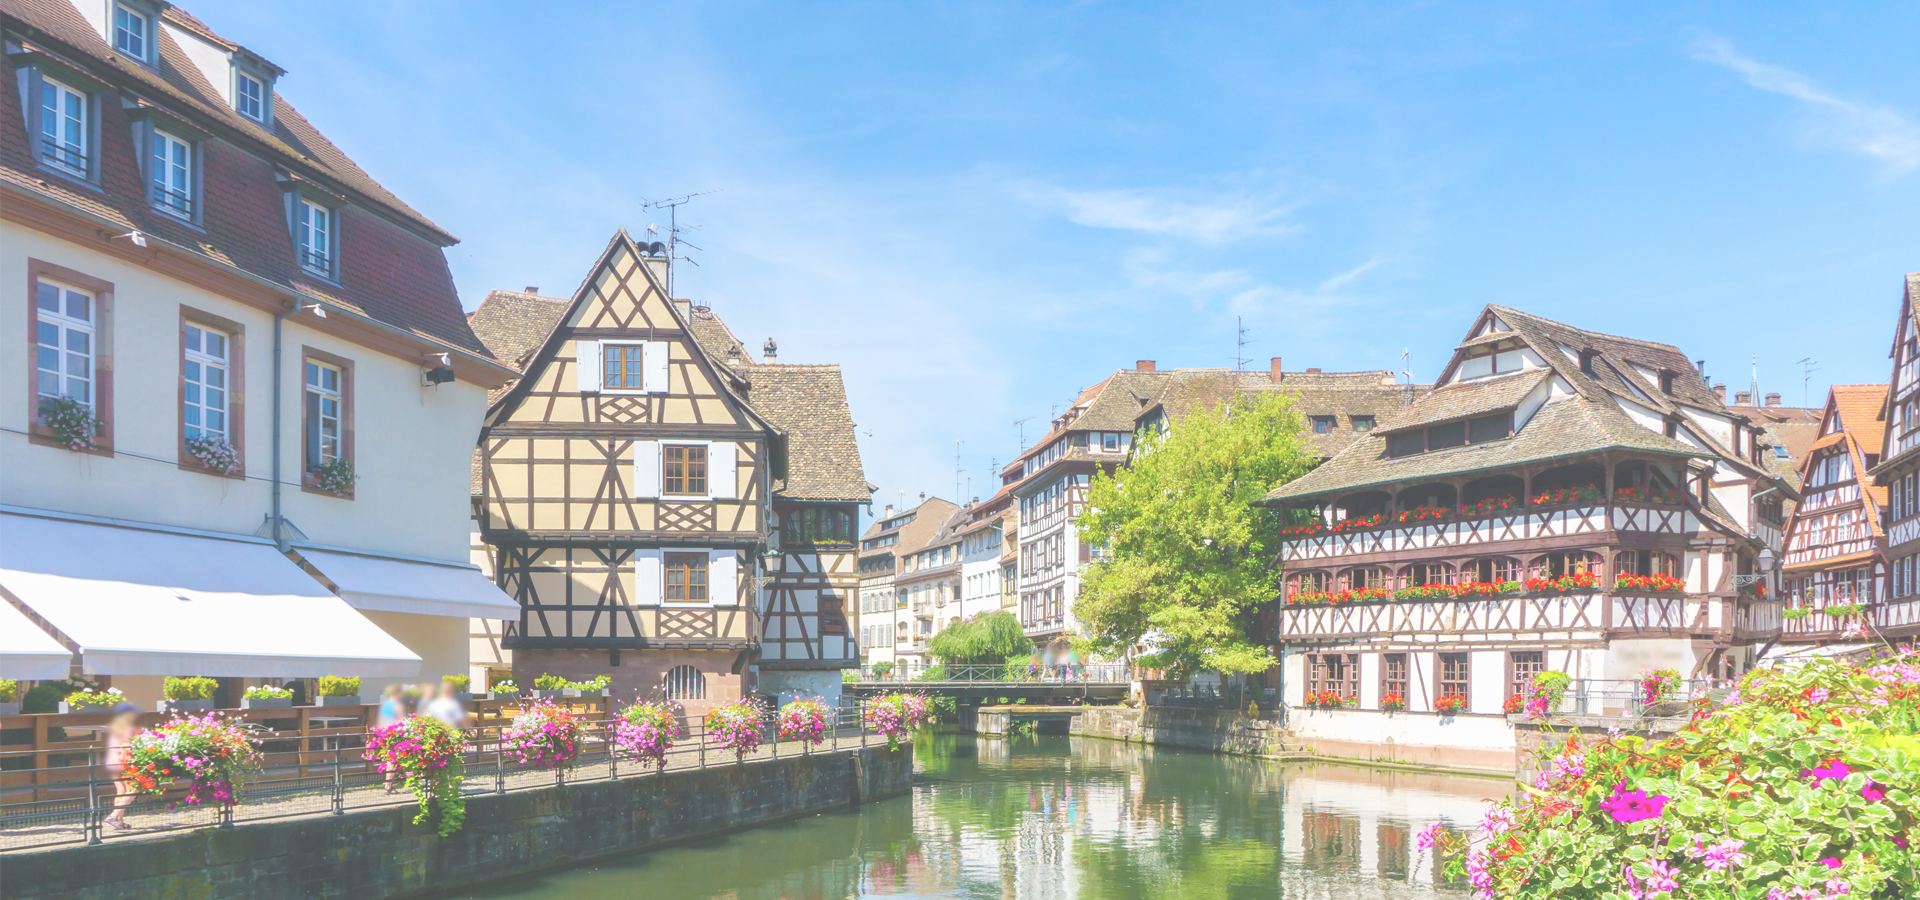 La Petite France, Strasbourg, Alsace, France